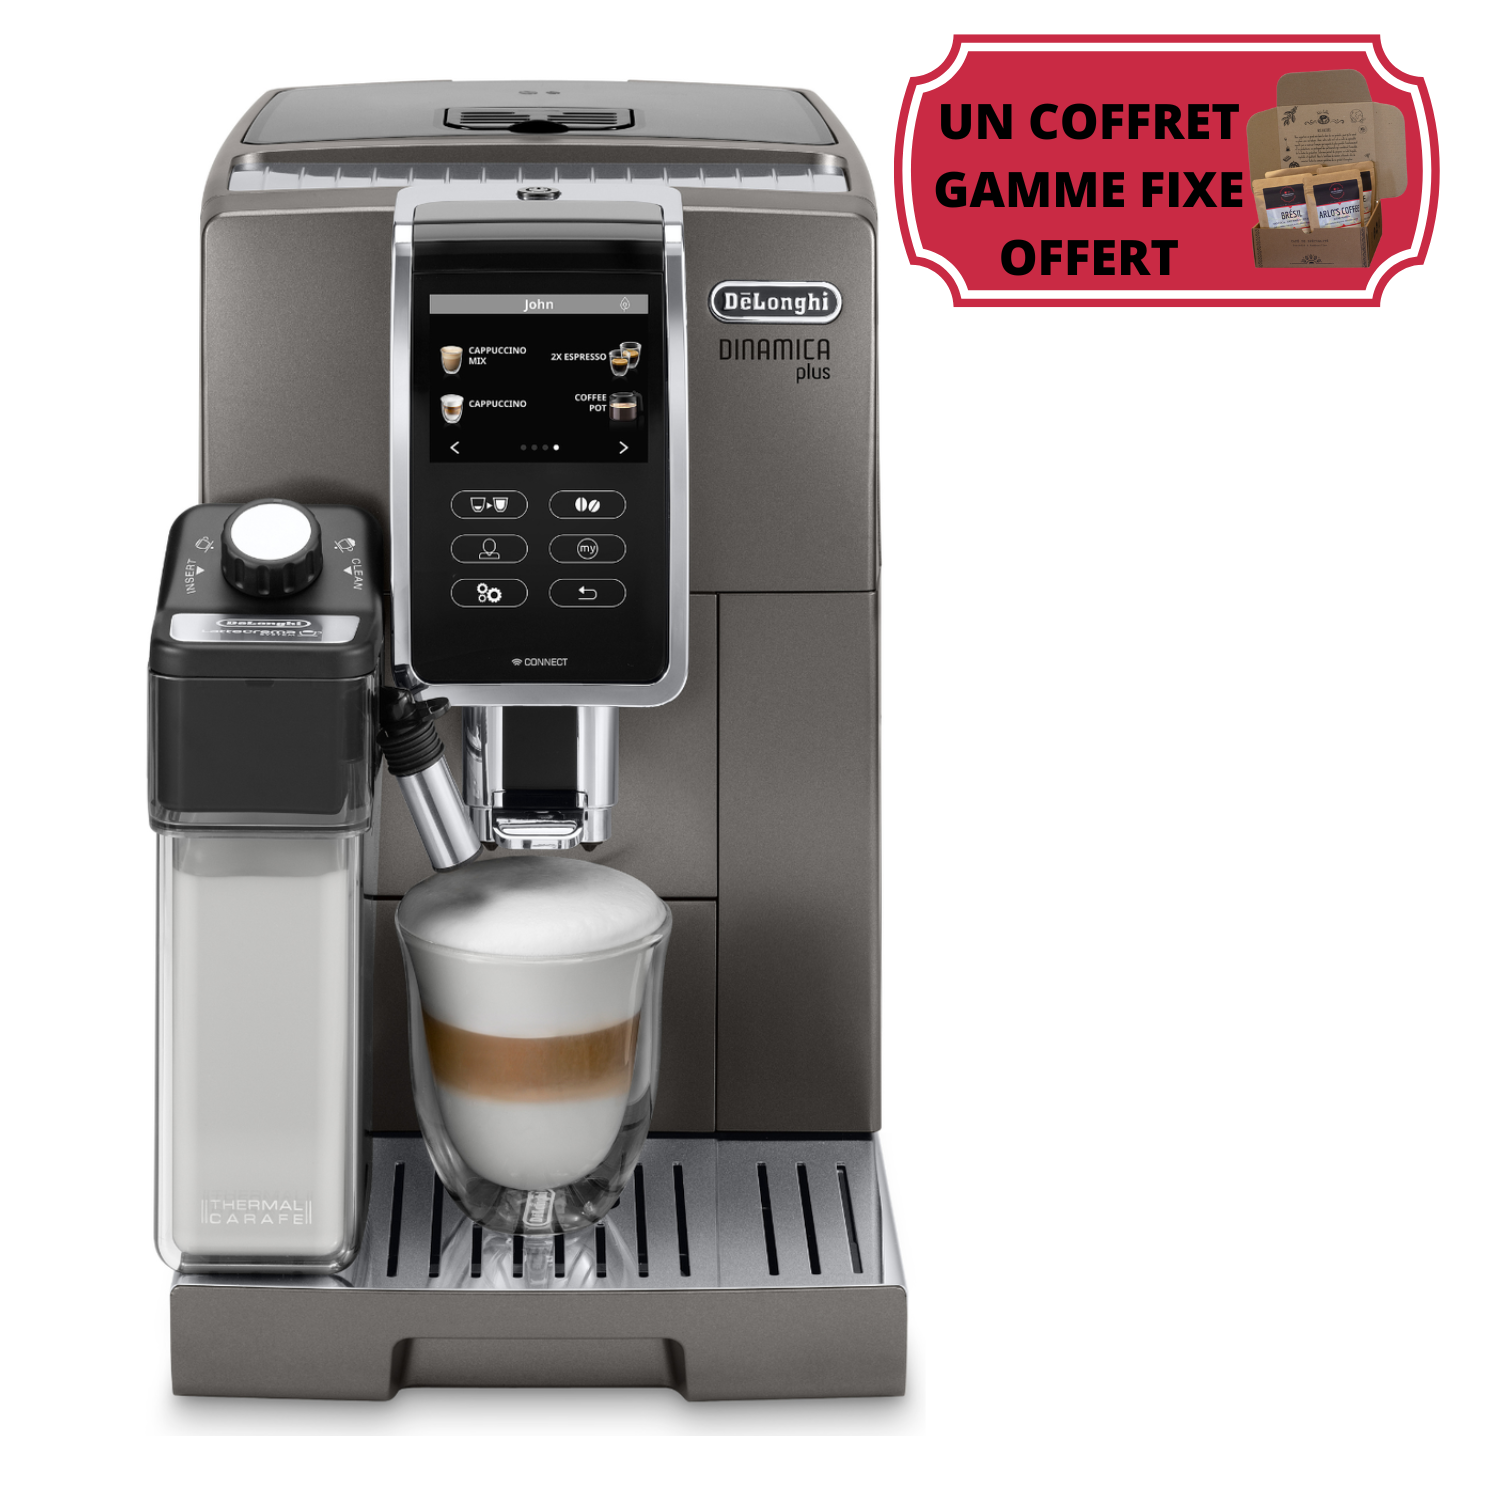 Delonghi - Magnifica Start / Espresso broyeur / Arlo's Coffee